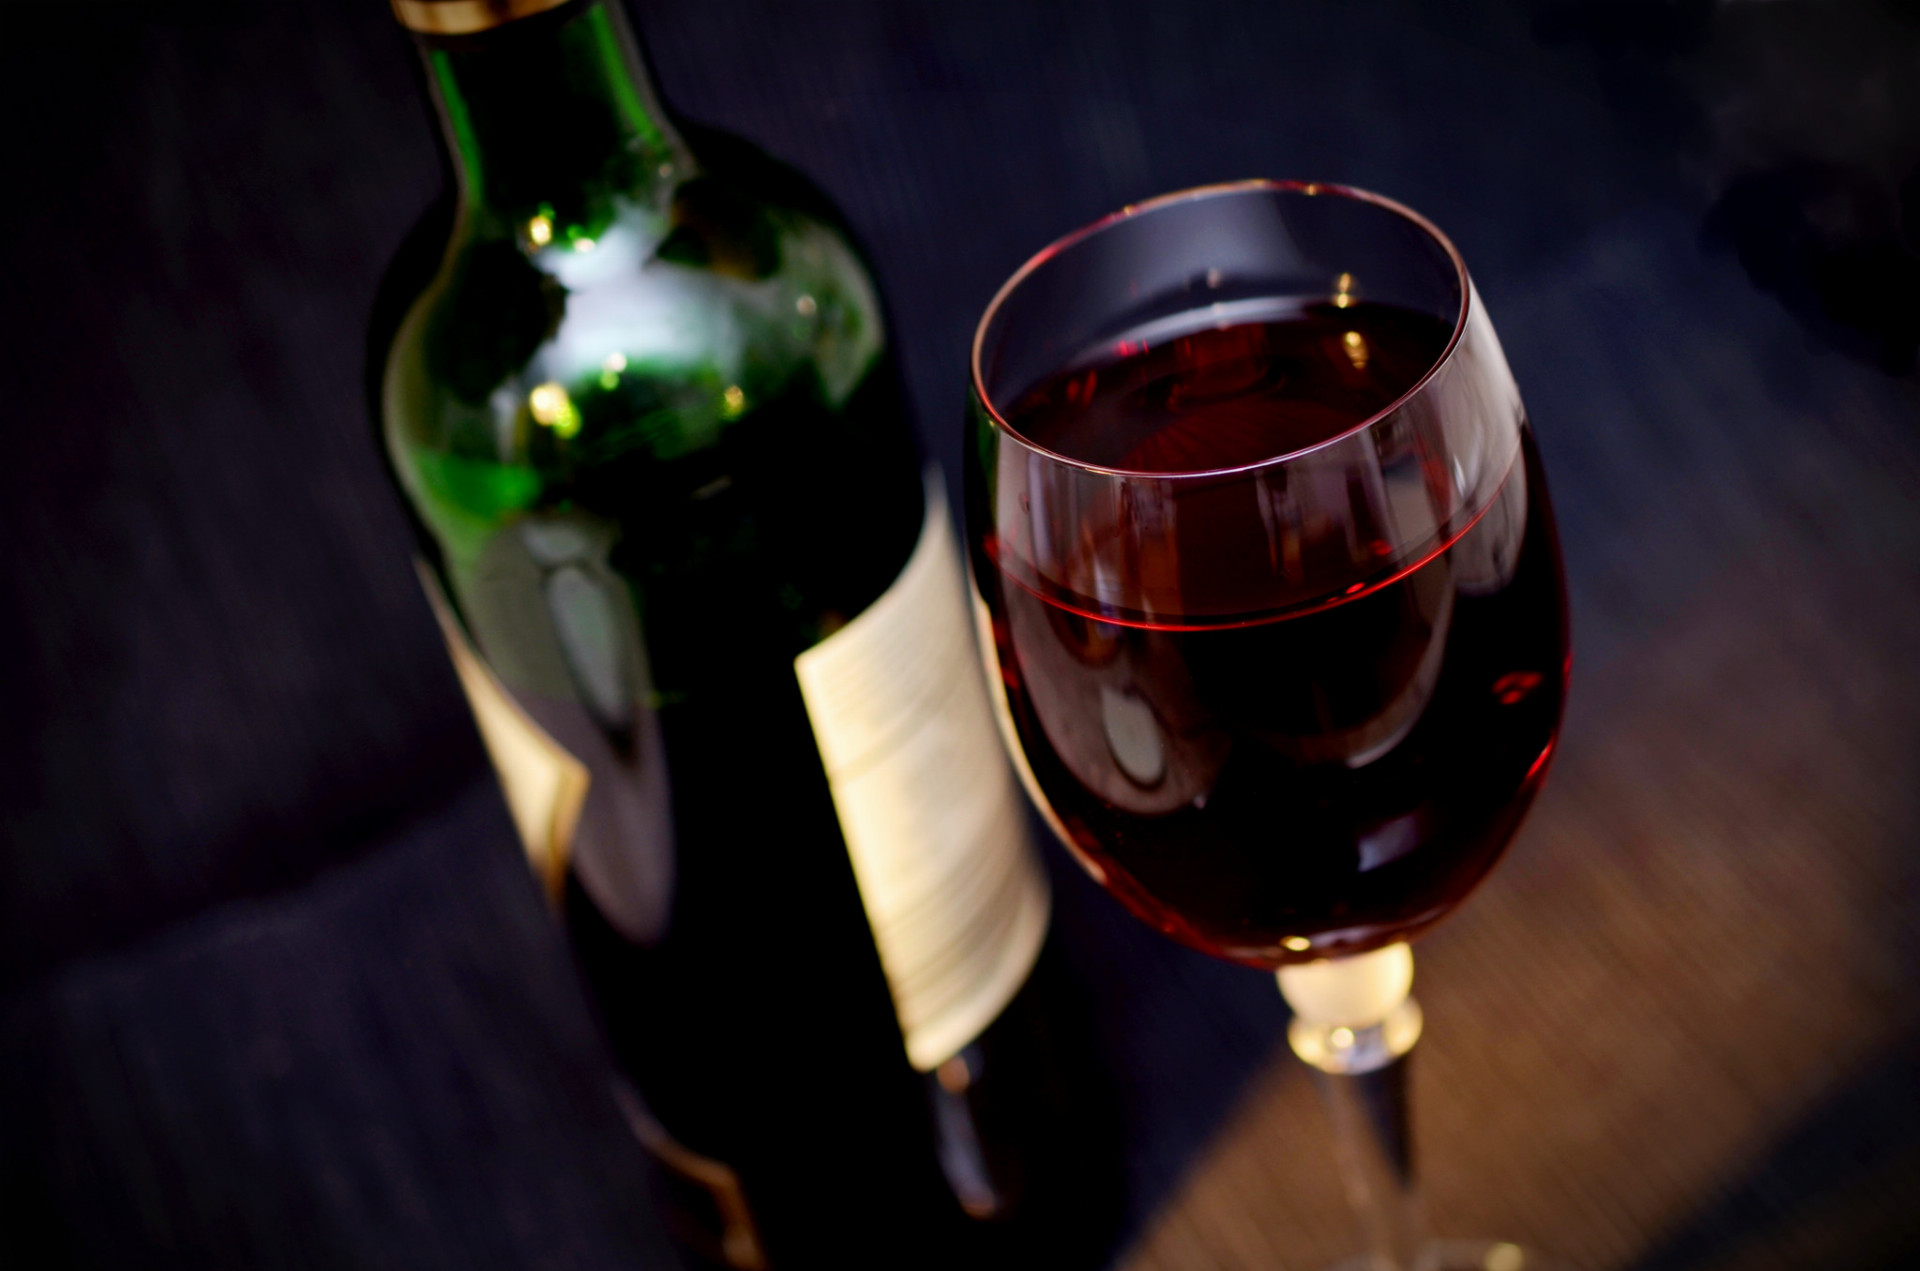 Dobrou správou pre milovníkov červeného vína je záver vedcov z Oregon State University, že okrem ďalších zdravotných prínosov prispieva víno aj k zrýchleniu metabolizmu. Rovnaký efekt má aj šťava z červeného hrozna.

Červené víno má pozitívny vplyv na metabolizmus pečeňových buniek a okrem toho, že by malo prispievať k zníženiu vašej váhy, zlepšuje údajne aj funkciu pečene u ľudí s nadváhou. Látky, ktoré sú v červenom víne obsiahnuté, dramaticky spomaľujú rast už existujúcich tukových buniek a vytváranie nových.